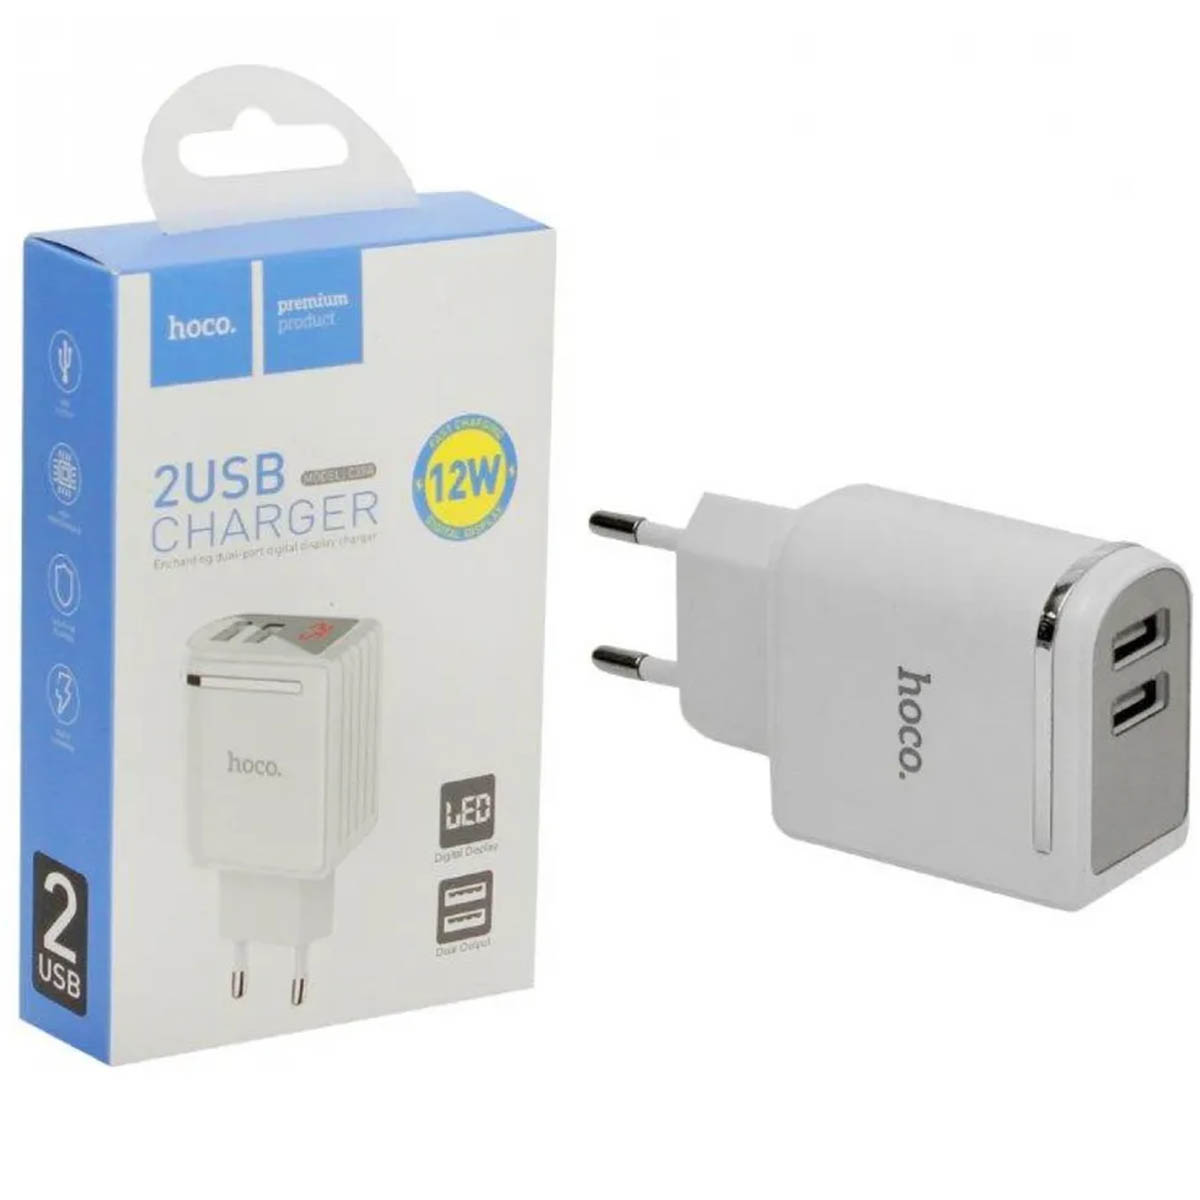 СЗУ (Сетевое зарядное устройство) HOCO C39A, 12W, 2.4A, 2 USB, Led дисплей, цвет белый